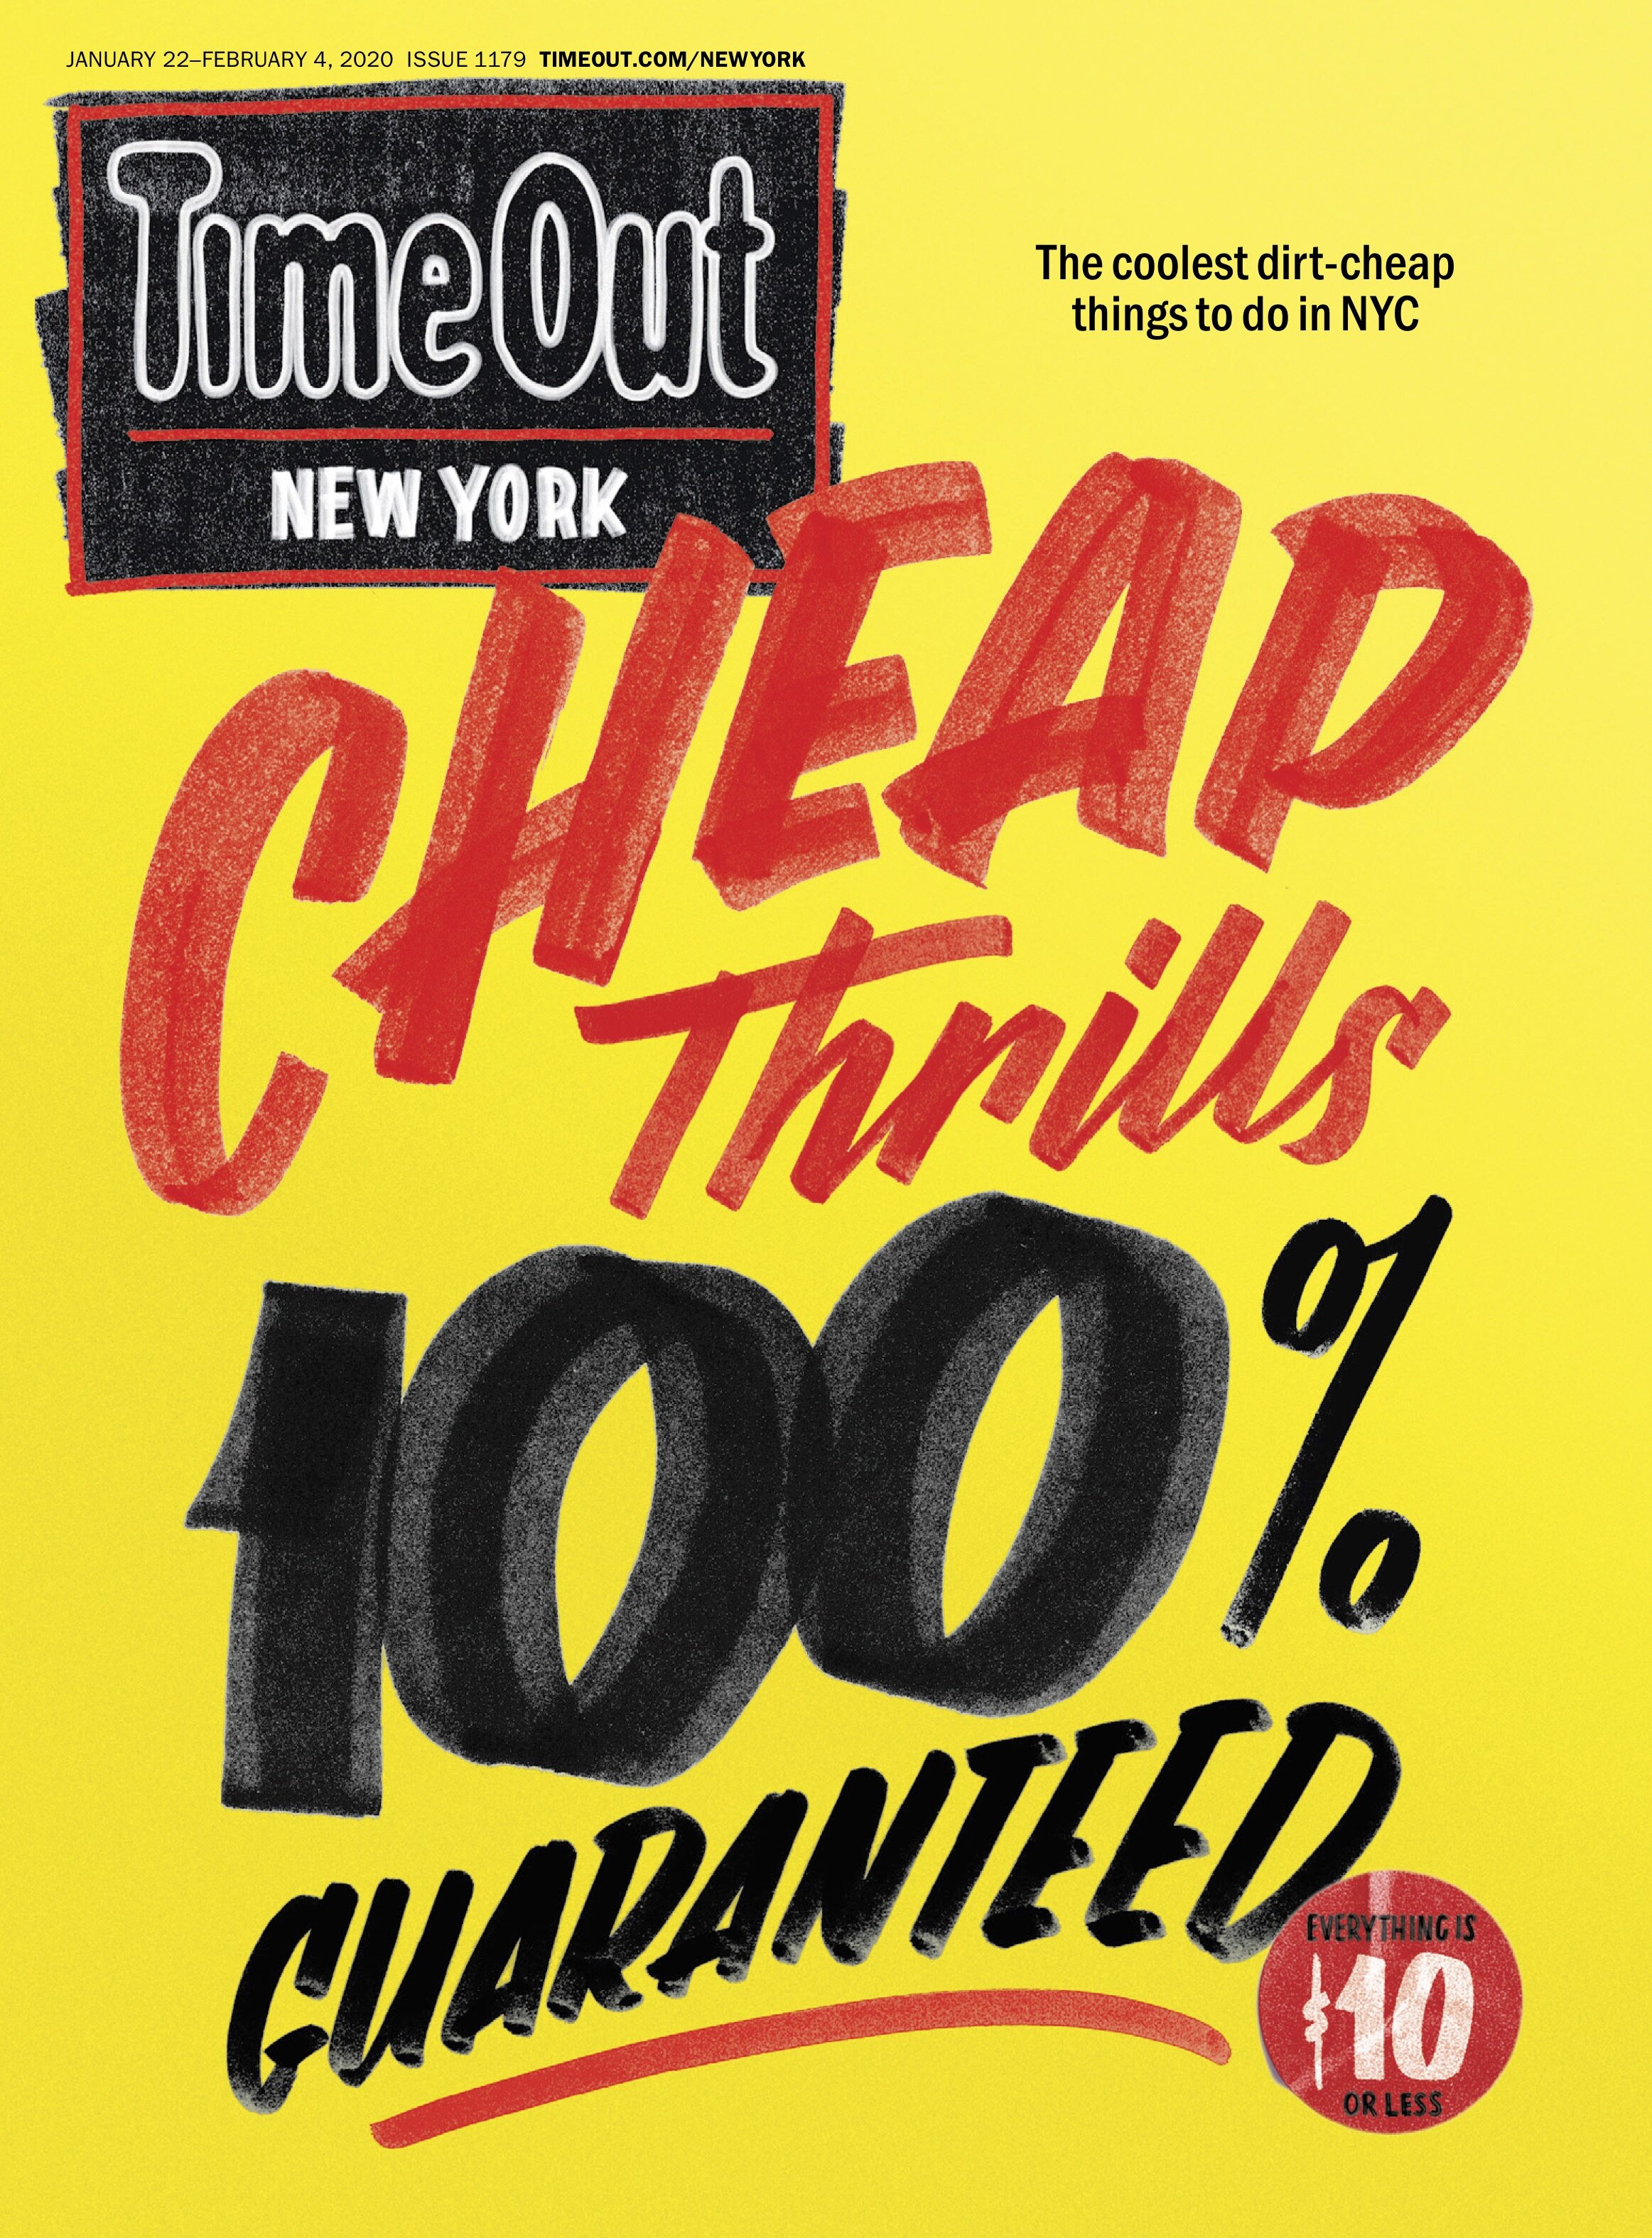 "Cheap thrills, 100% guaranteed"